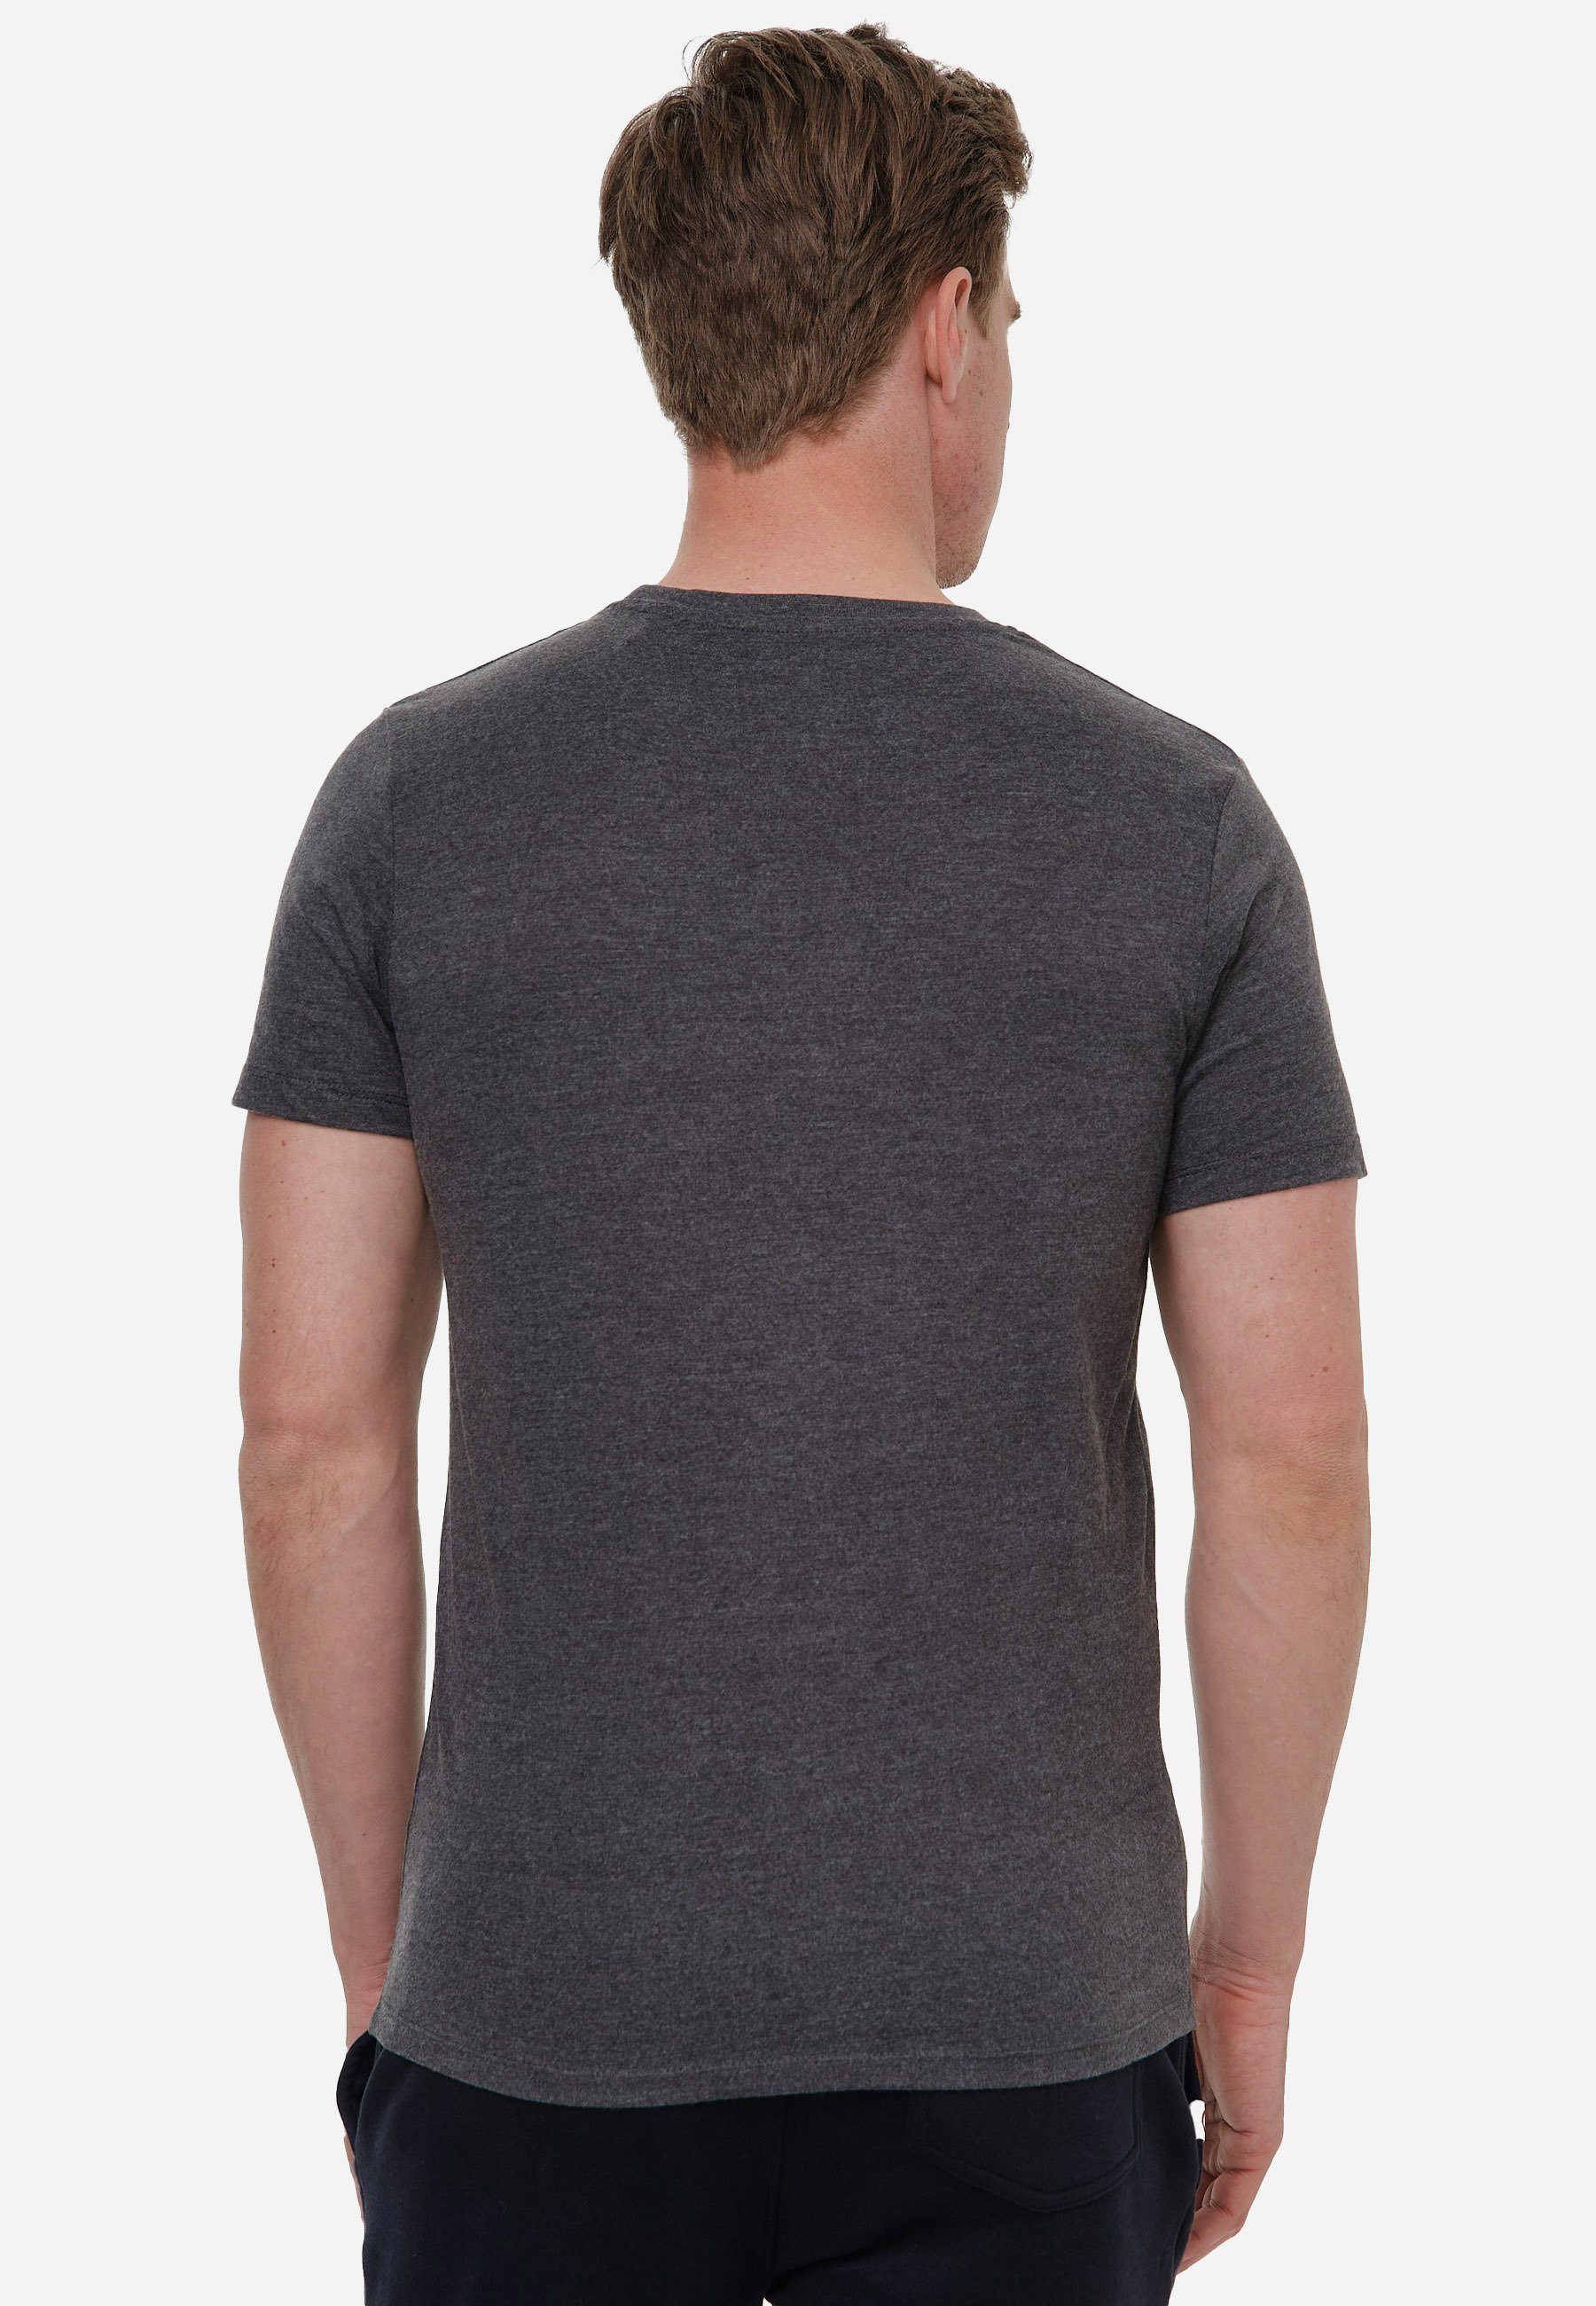 WA Athletic dunkelgrau-schwarz Woldo Big T-Shirt T-Shirt